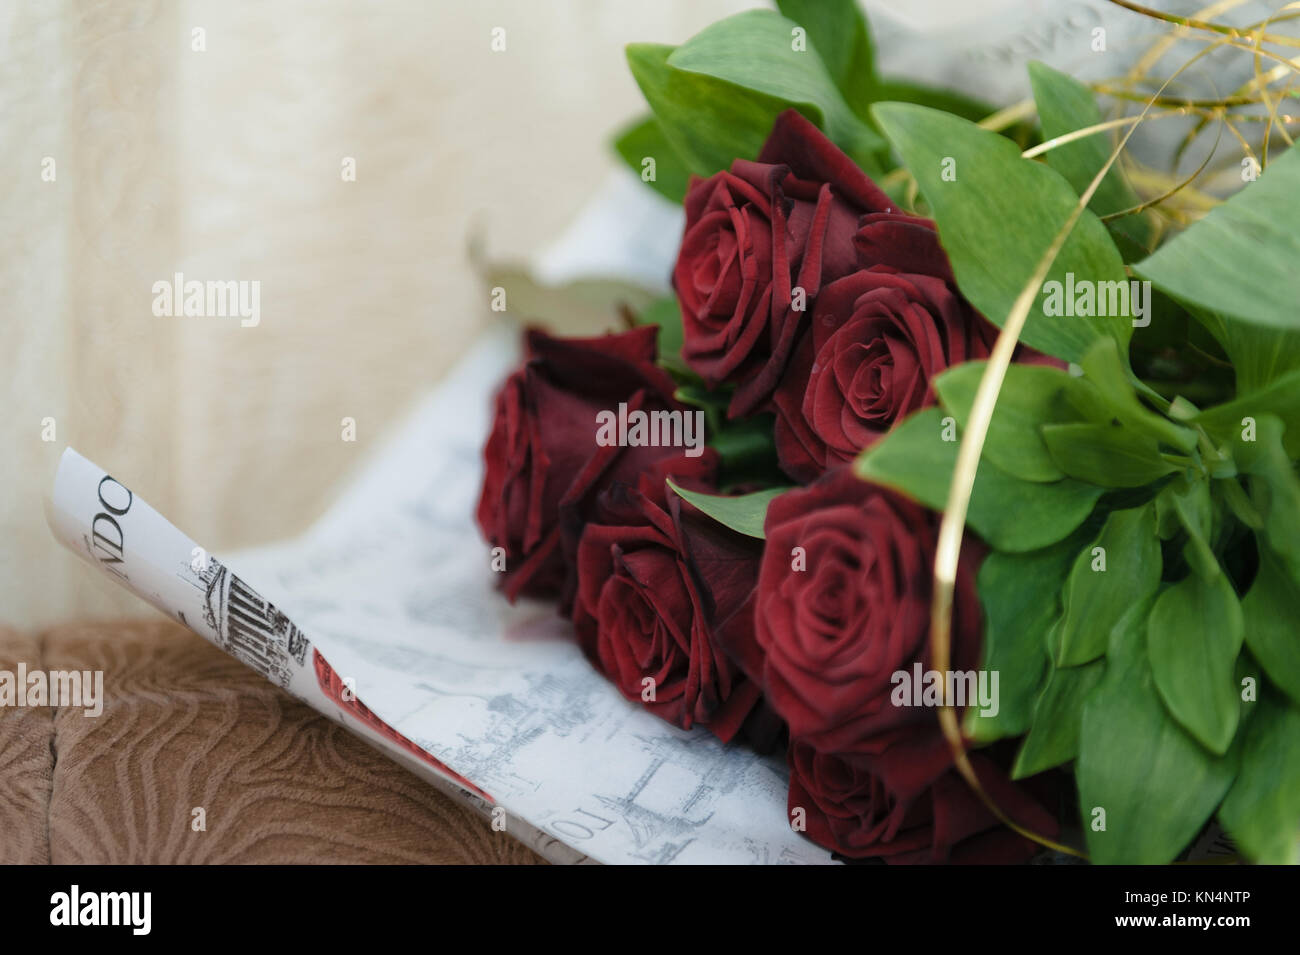 Luxus Strauß roter Rosen in Flower Shop Valentinstag Blumenstrauß aus roten  Rosen. Rote Rosen eingewickelt in Papier auf hölzernen Tisch Hintergrund  Stockfotografie - Alamy